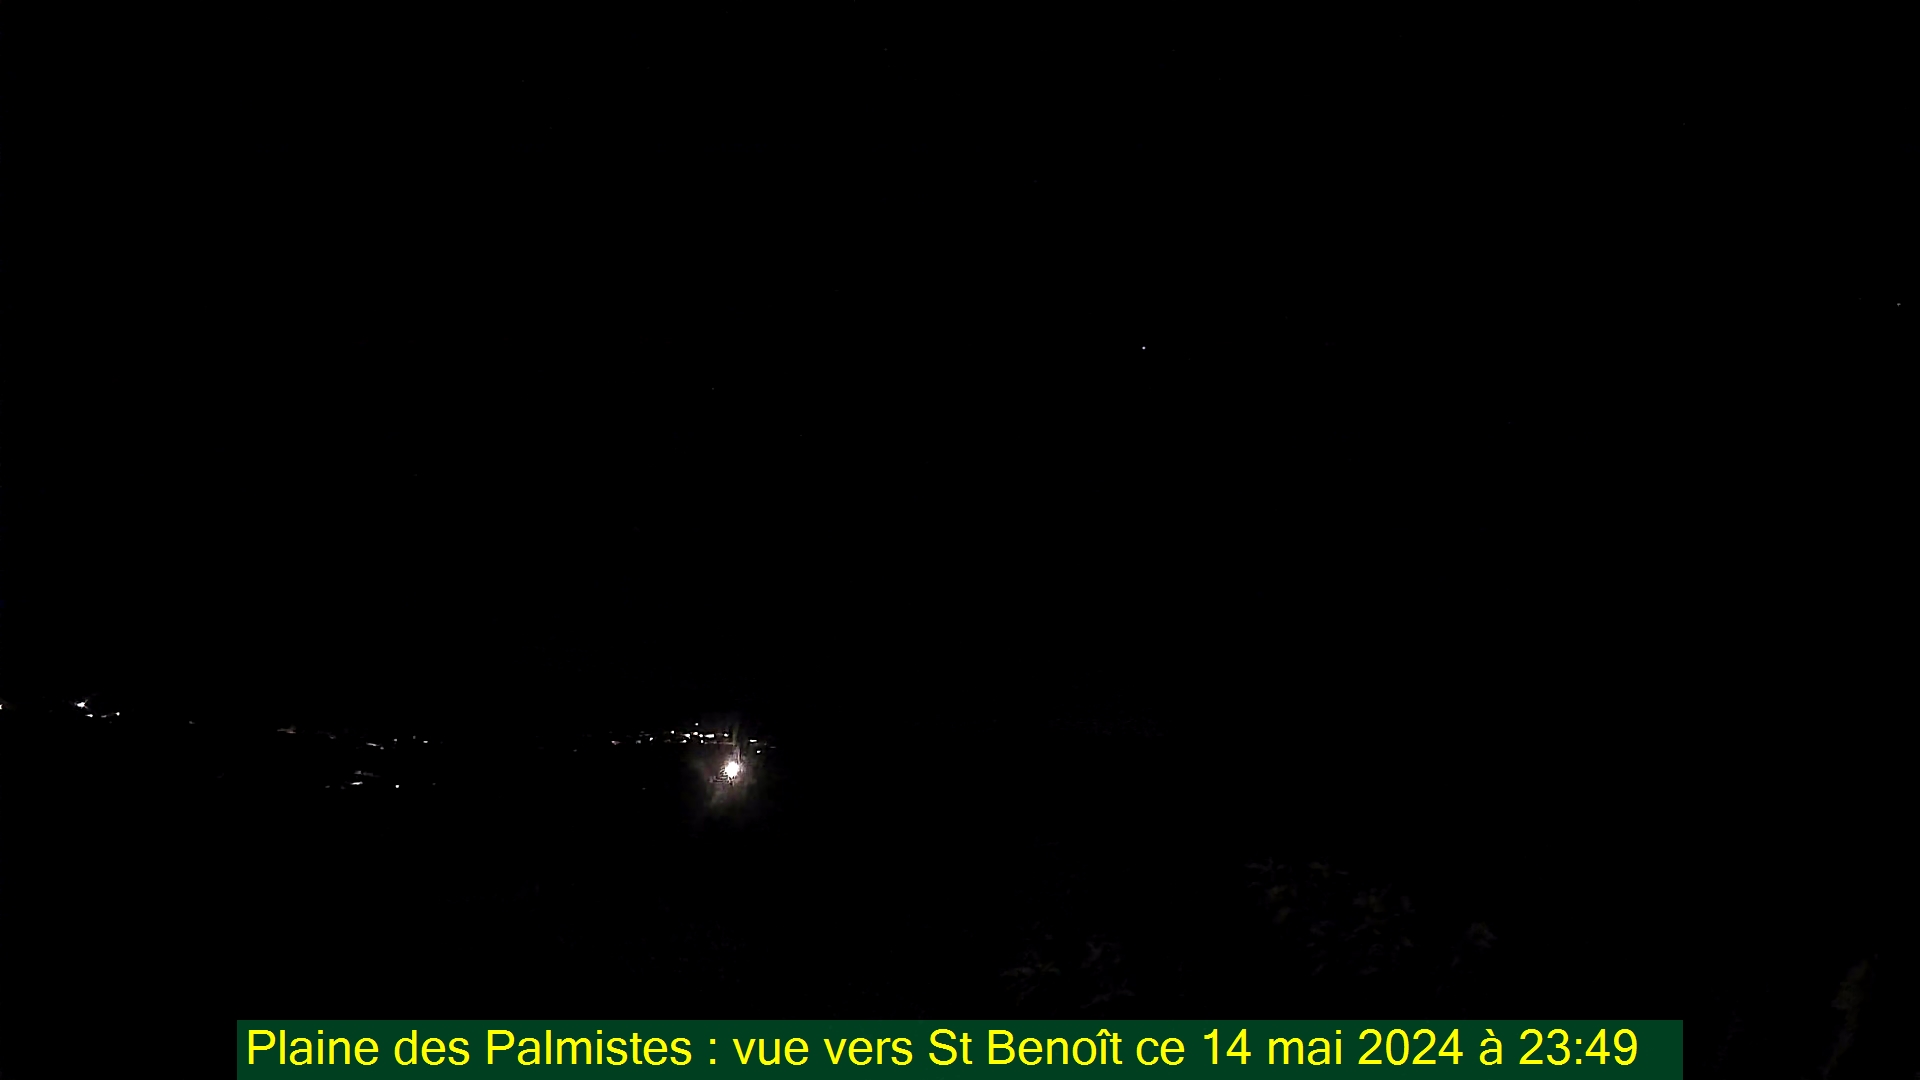 Saint-Denis (Réunion) Sun. 23:50